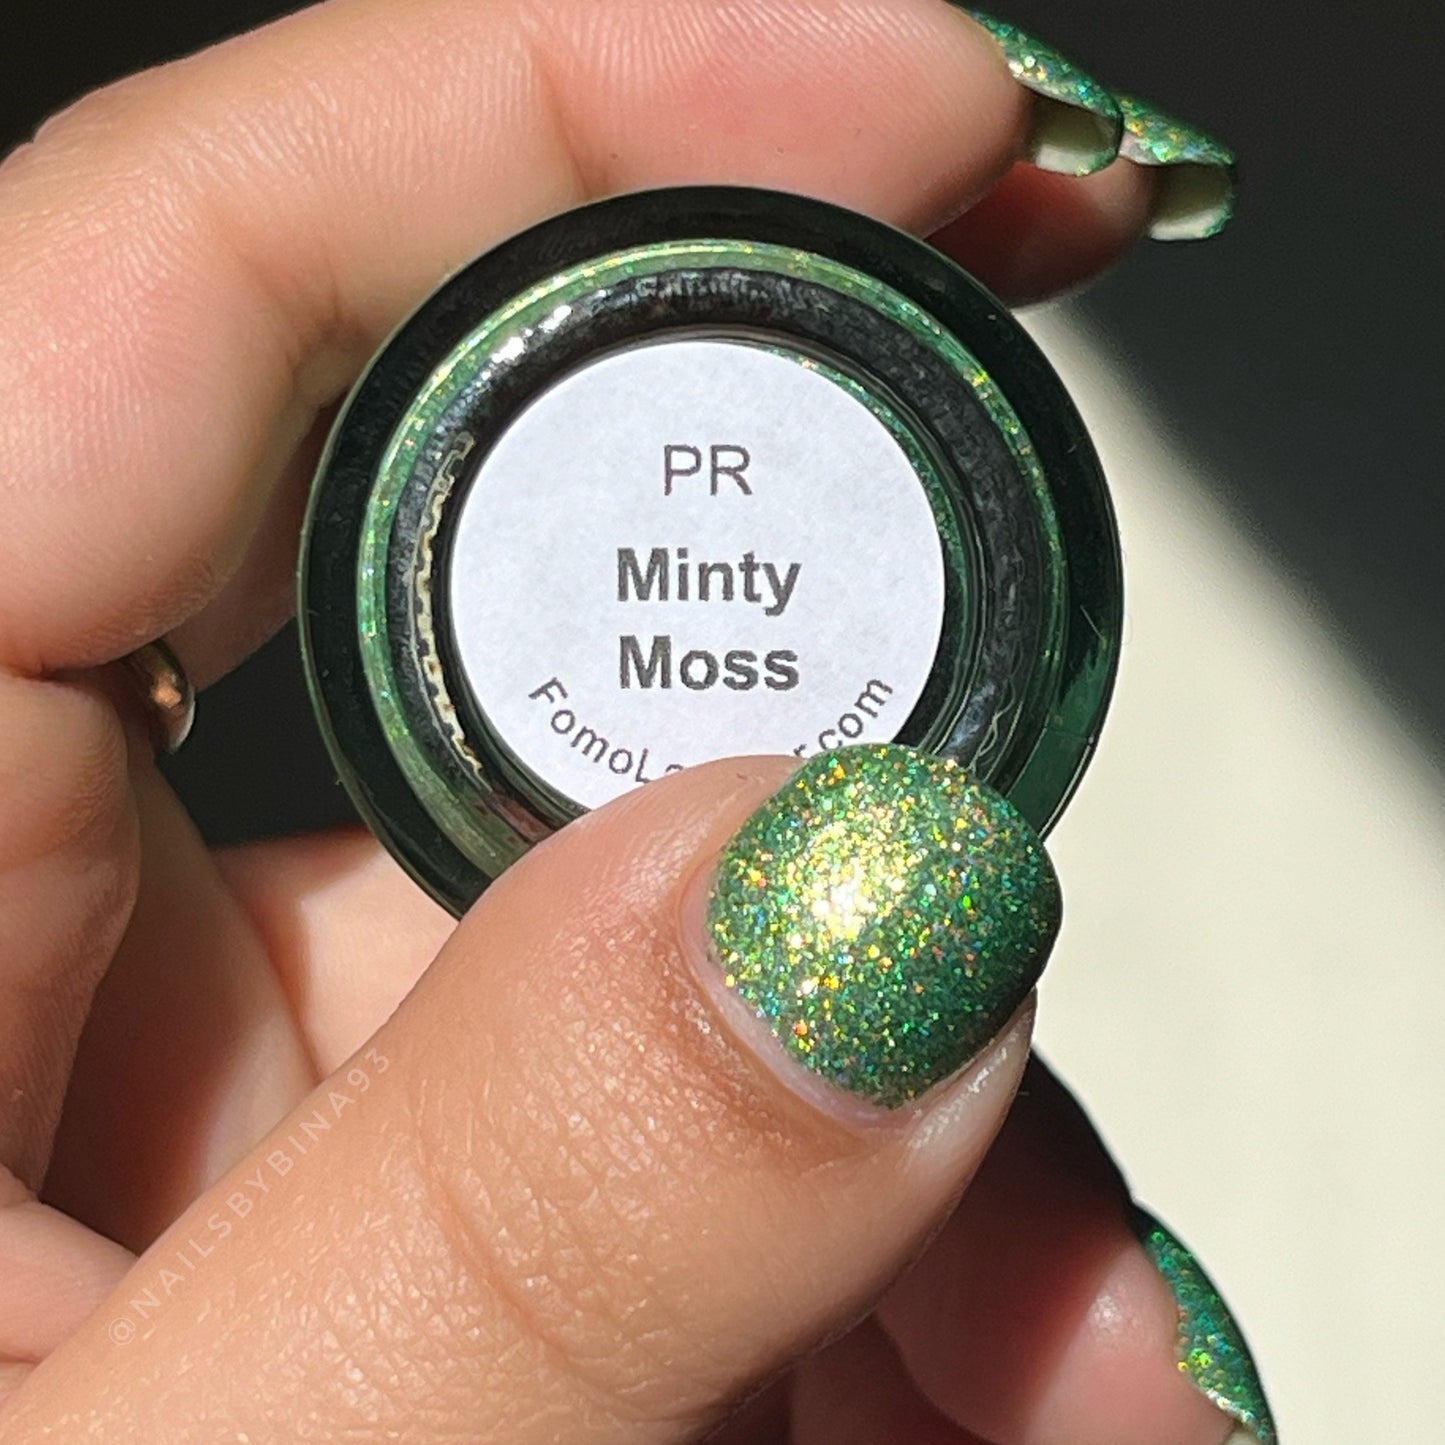 Minty Moss